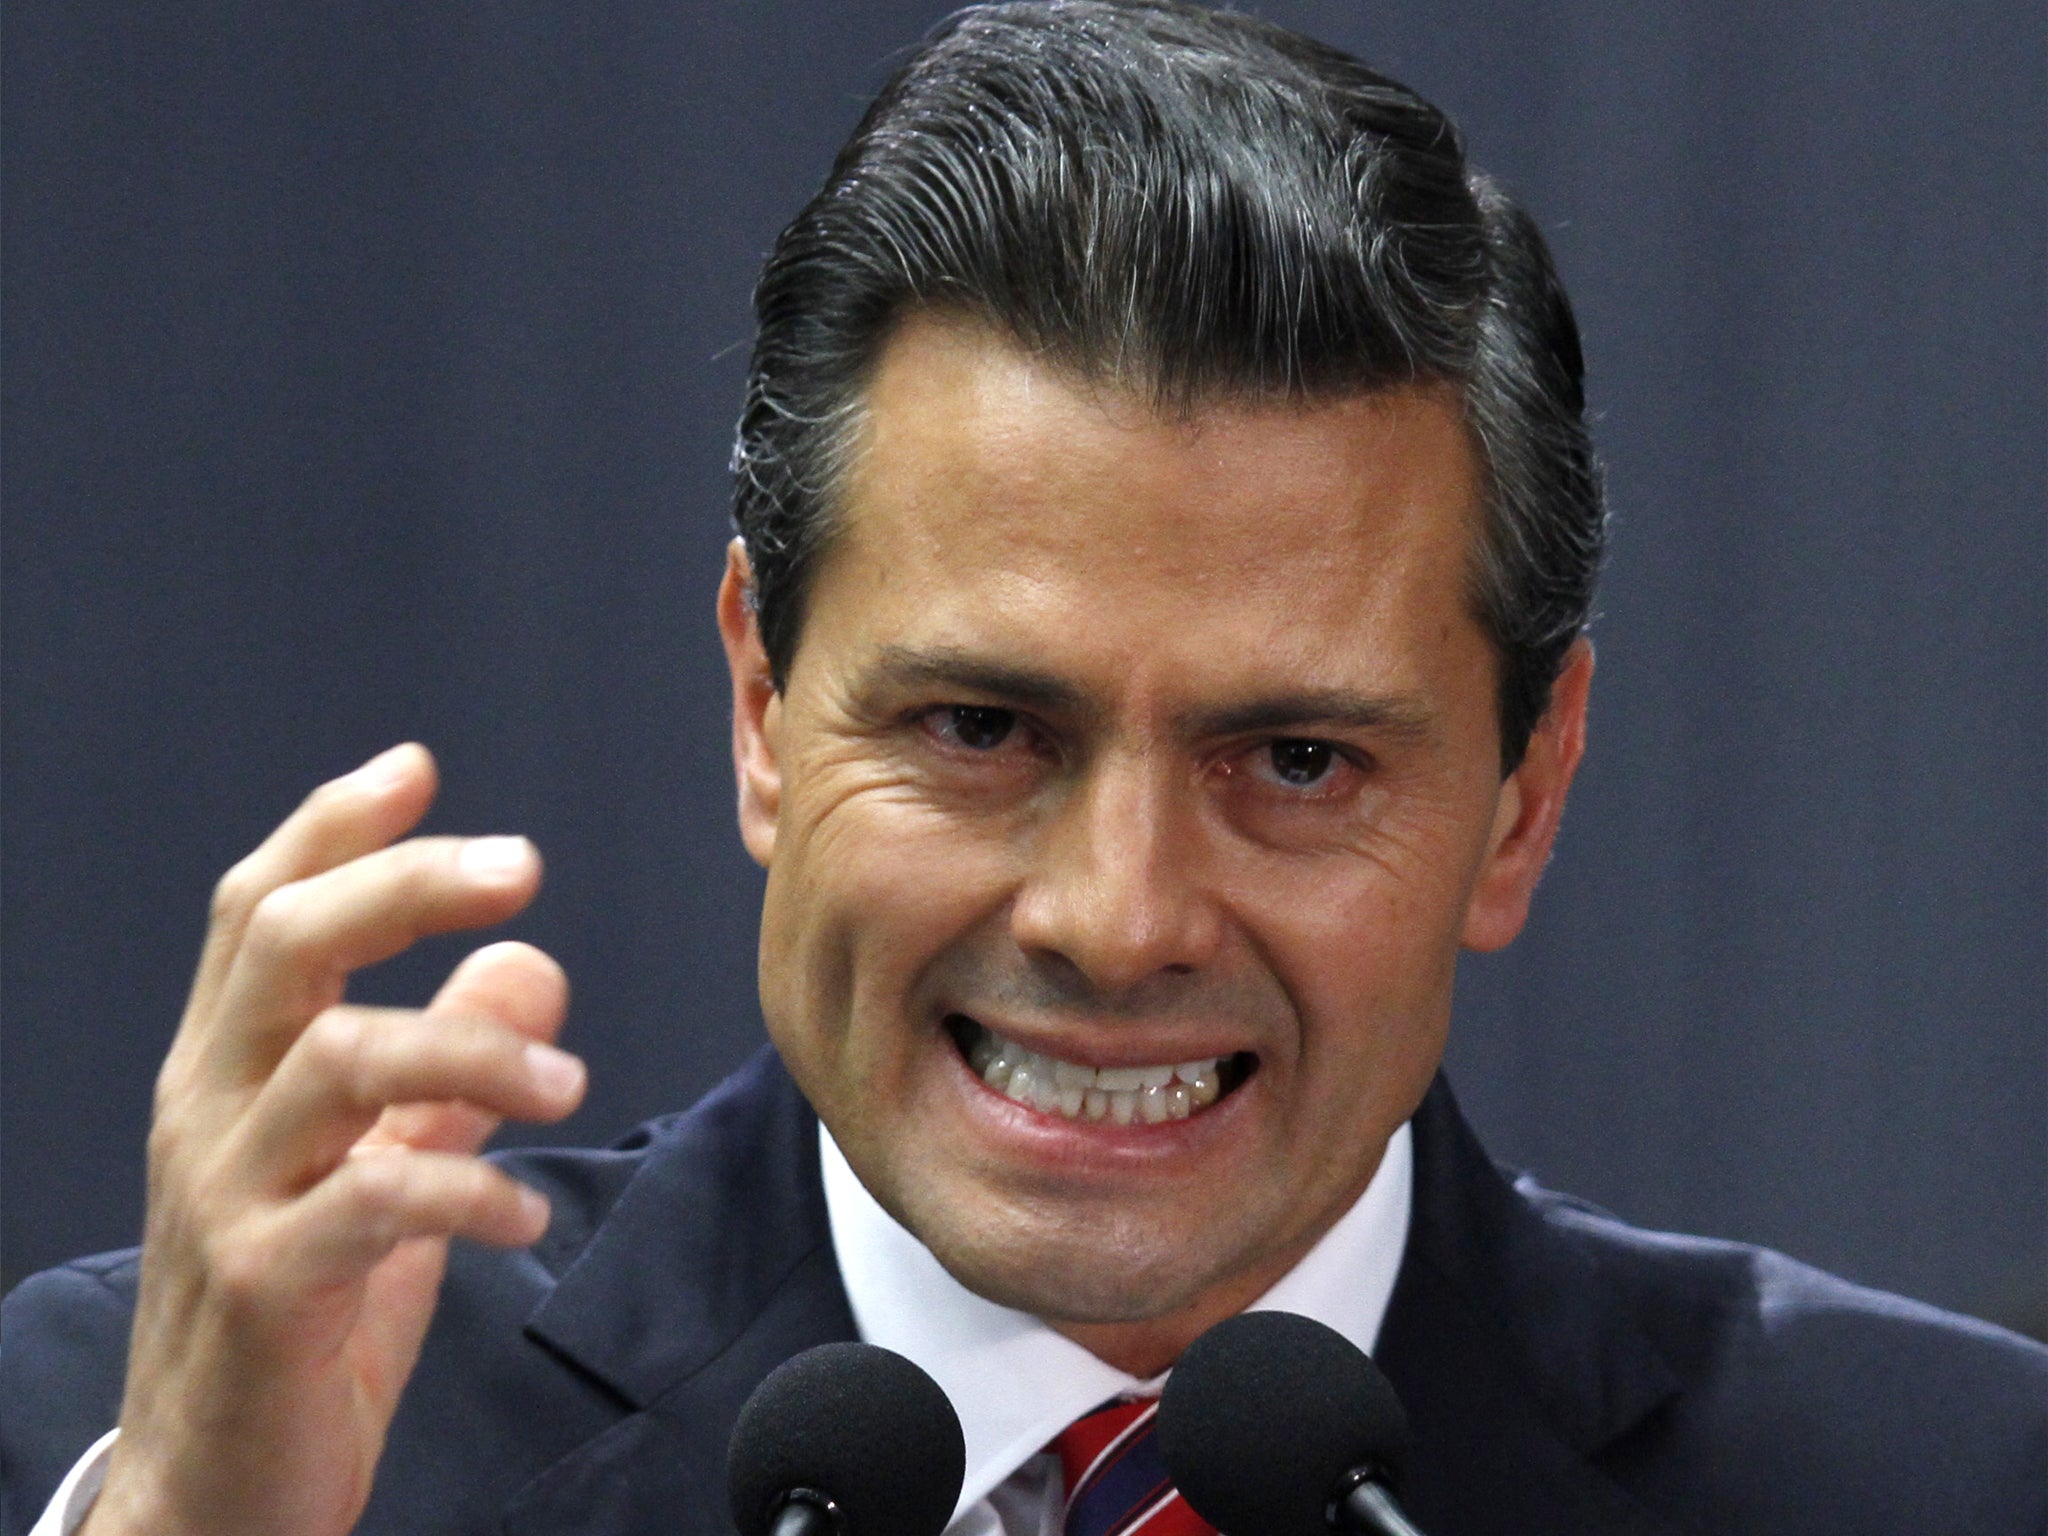 Mexico president Enrique Peña Nieto